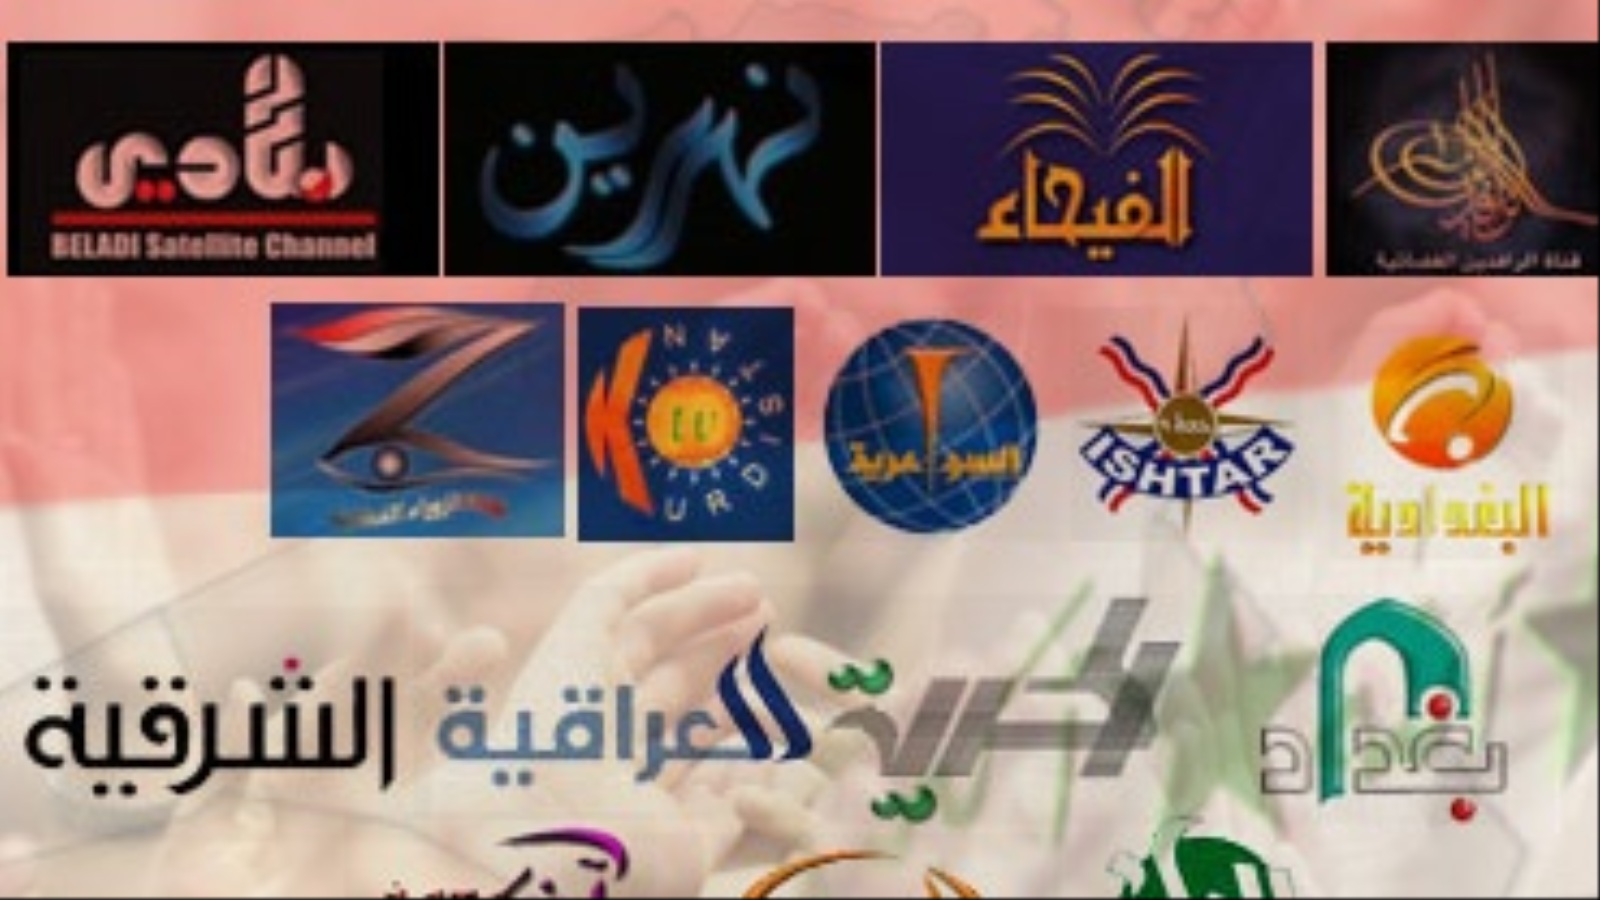 ‪في العراق نحو ثلاثمائة قناة تلفزيونية وإذاعية تتلقى دعما ماليا من الحكومة والأحزاب‬ (الجزيرة)